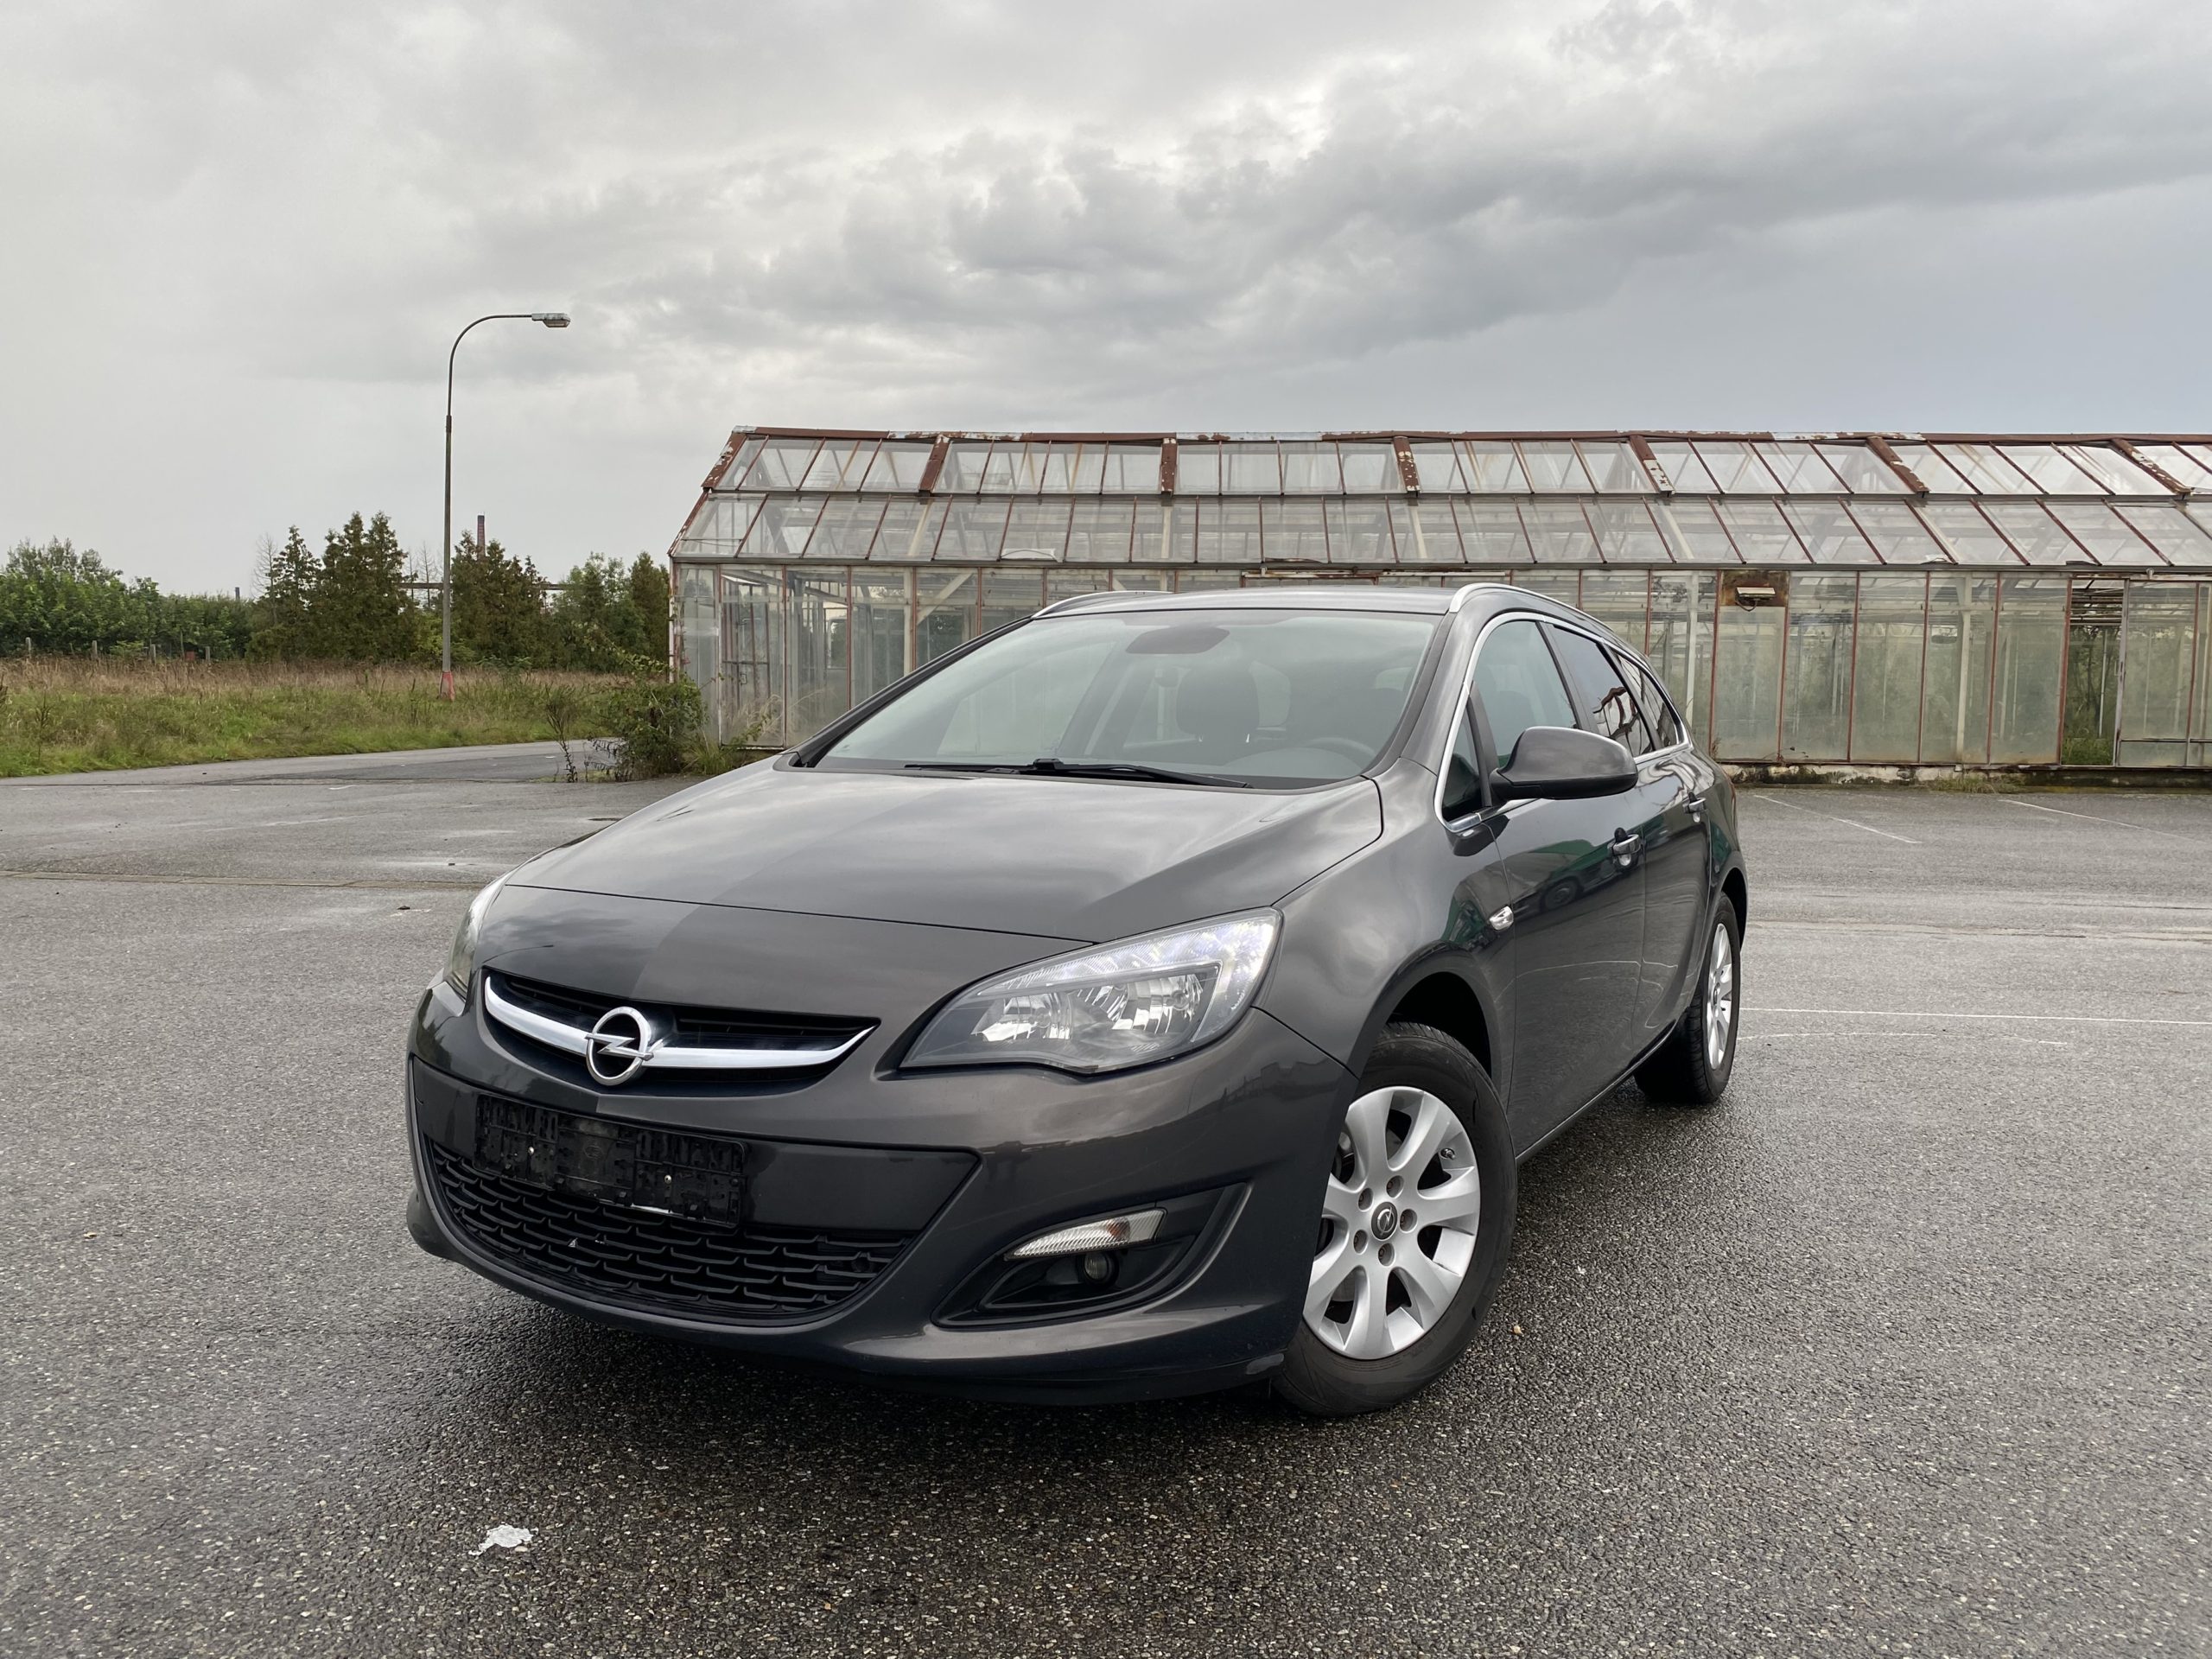 Přečtete si více ze článku [Prodáno] Opel Astra, 1.6 cdti, 2015 Facelift